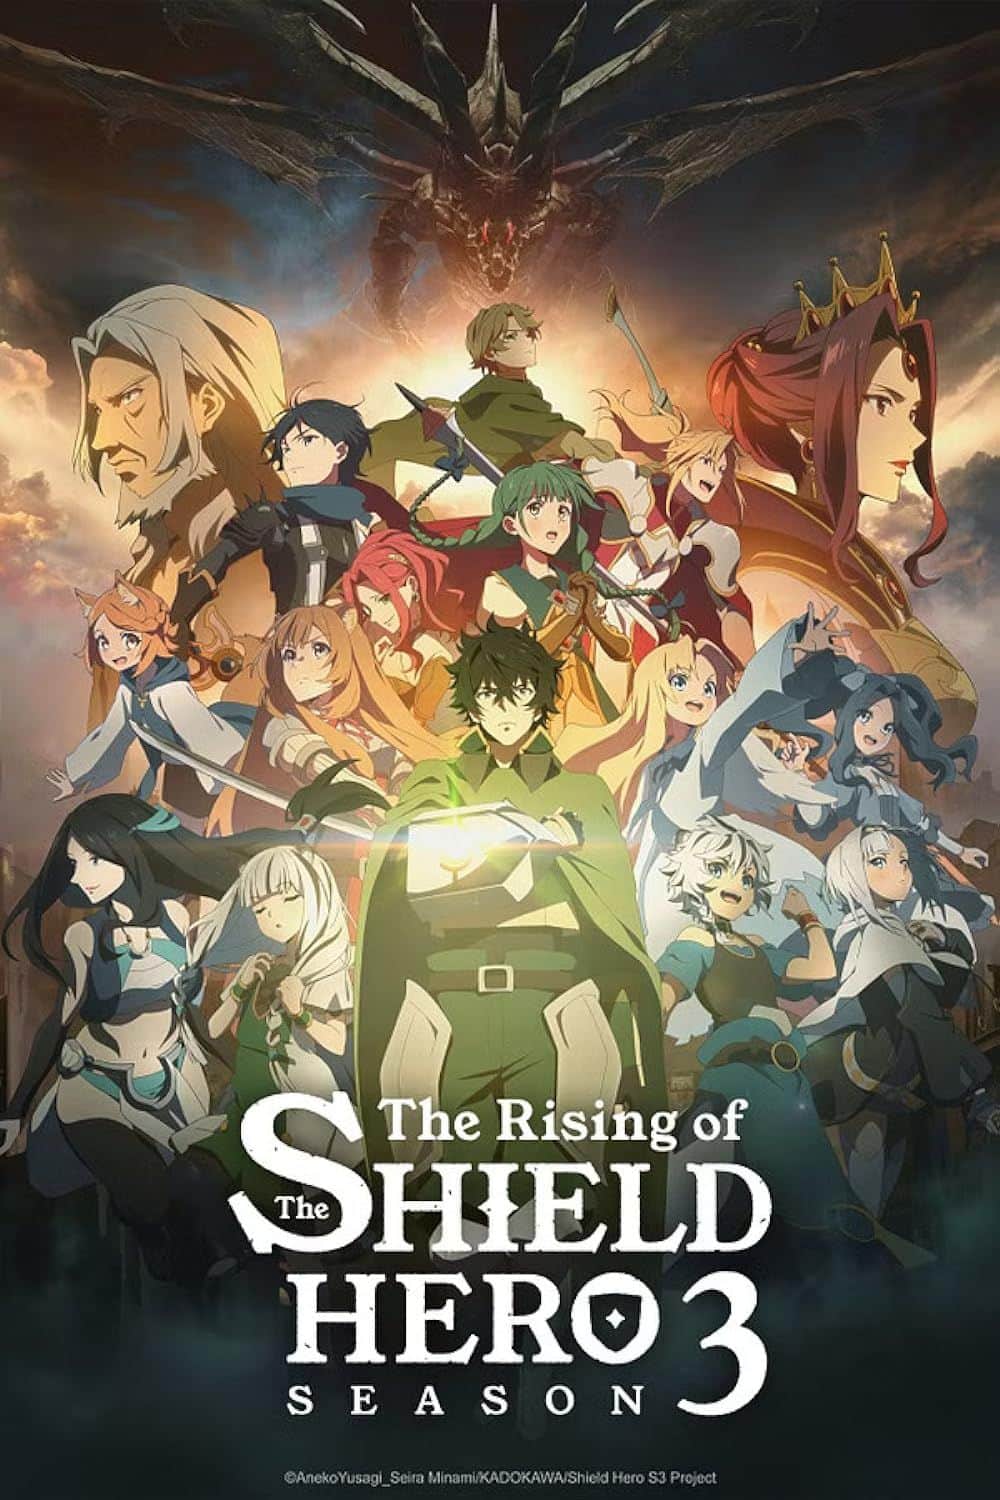 El elenco de personajes posando en el póster de la temporada 3 de Rising of the Shield Hero